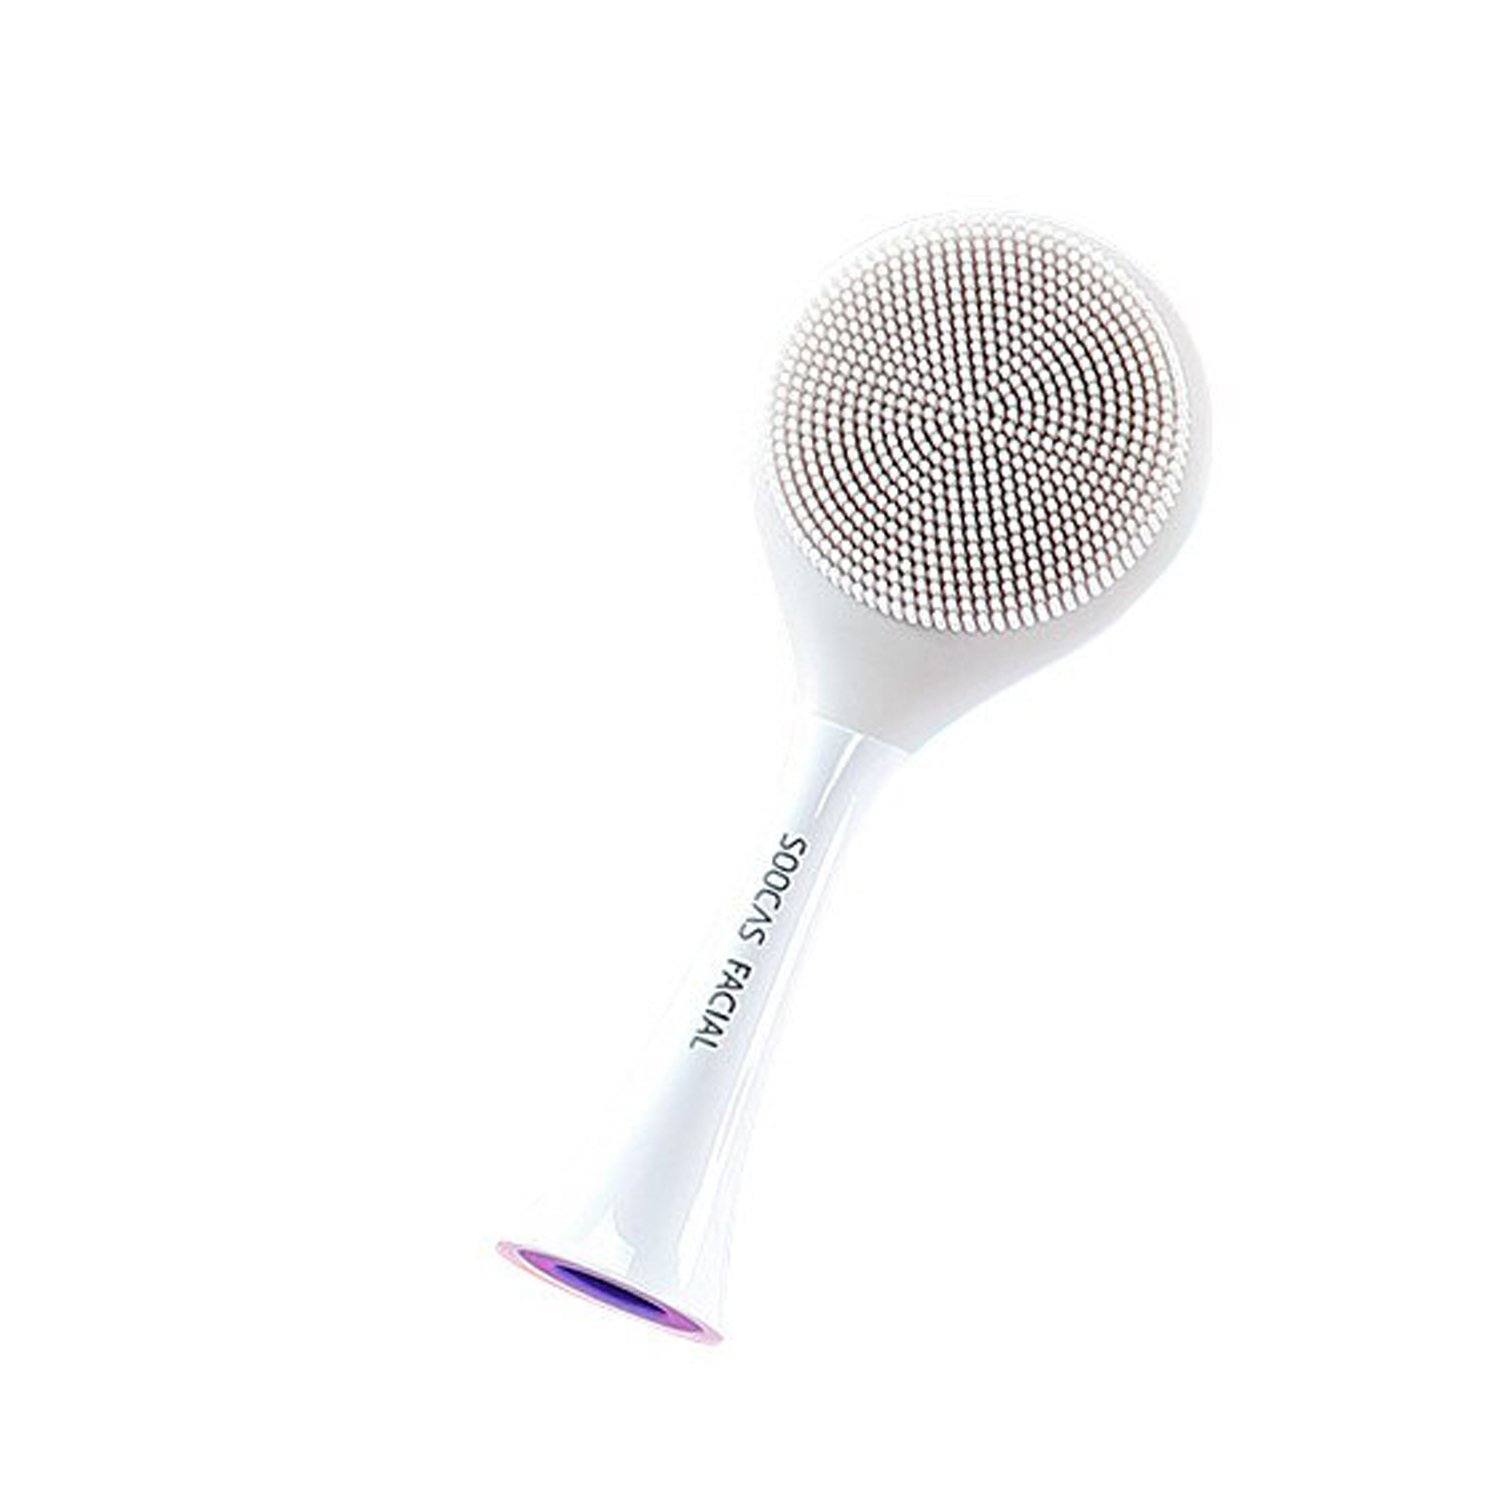 Soocas Original Silicone Facial Cleansing Brush Head for X1/ X3U/ X5, Gray Default Soocas 